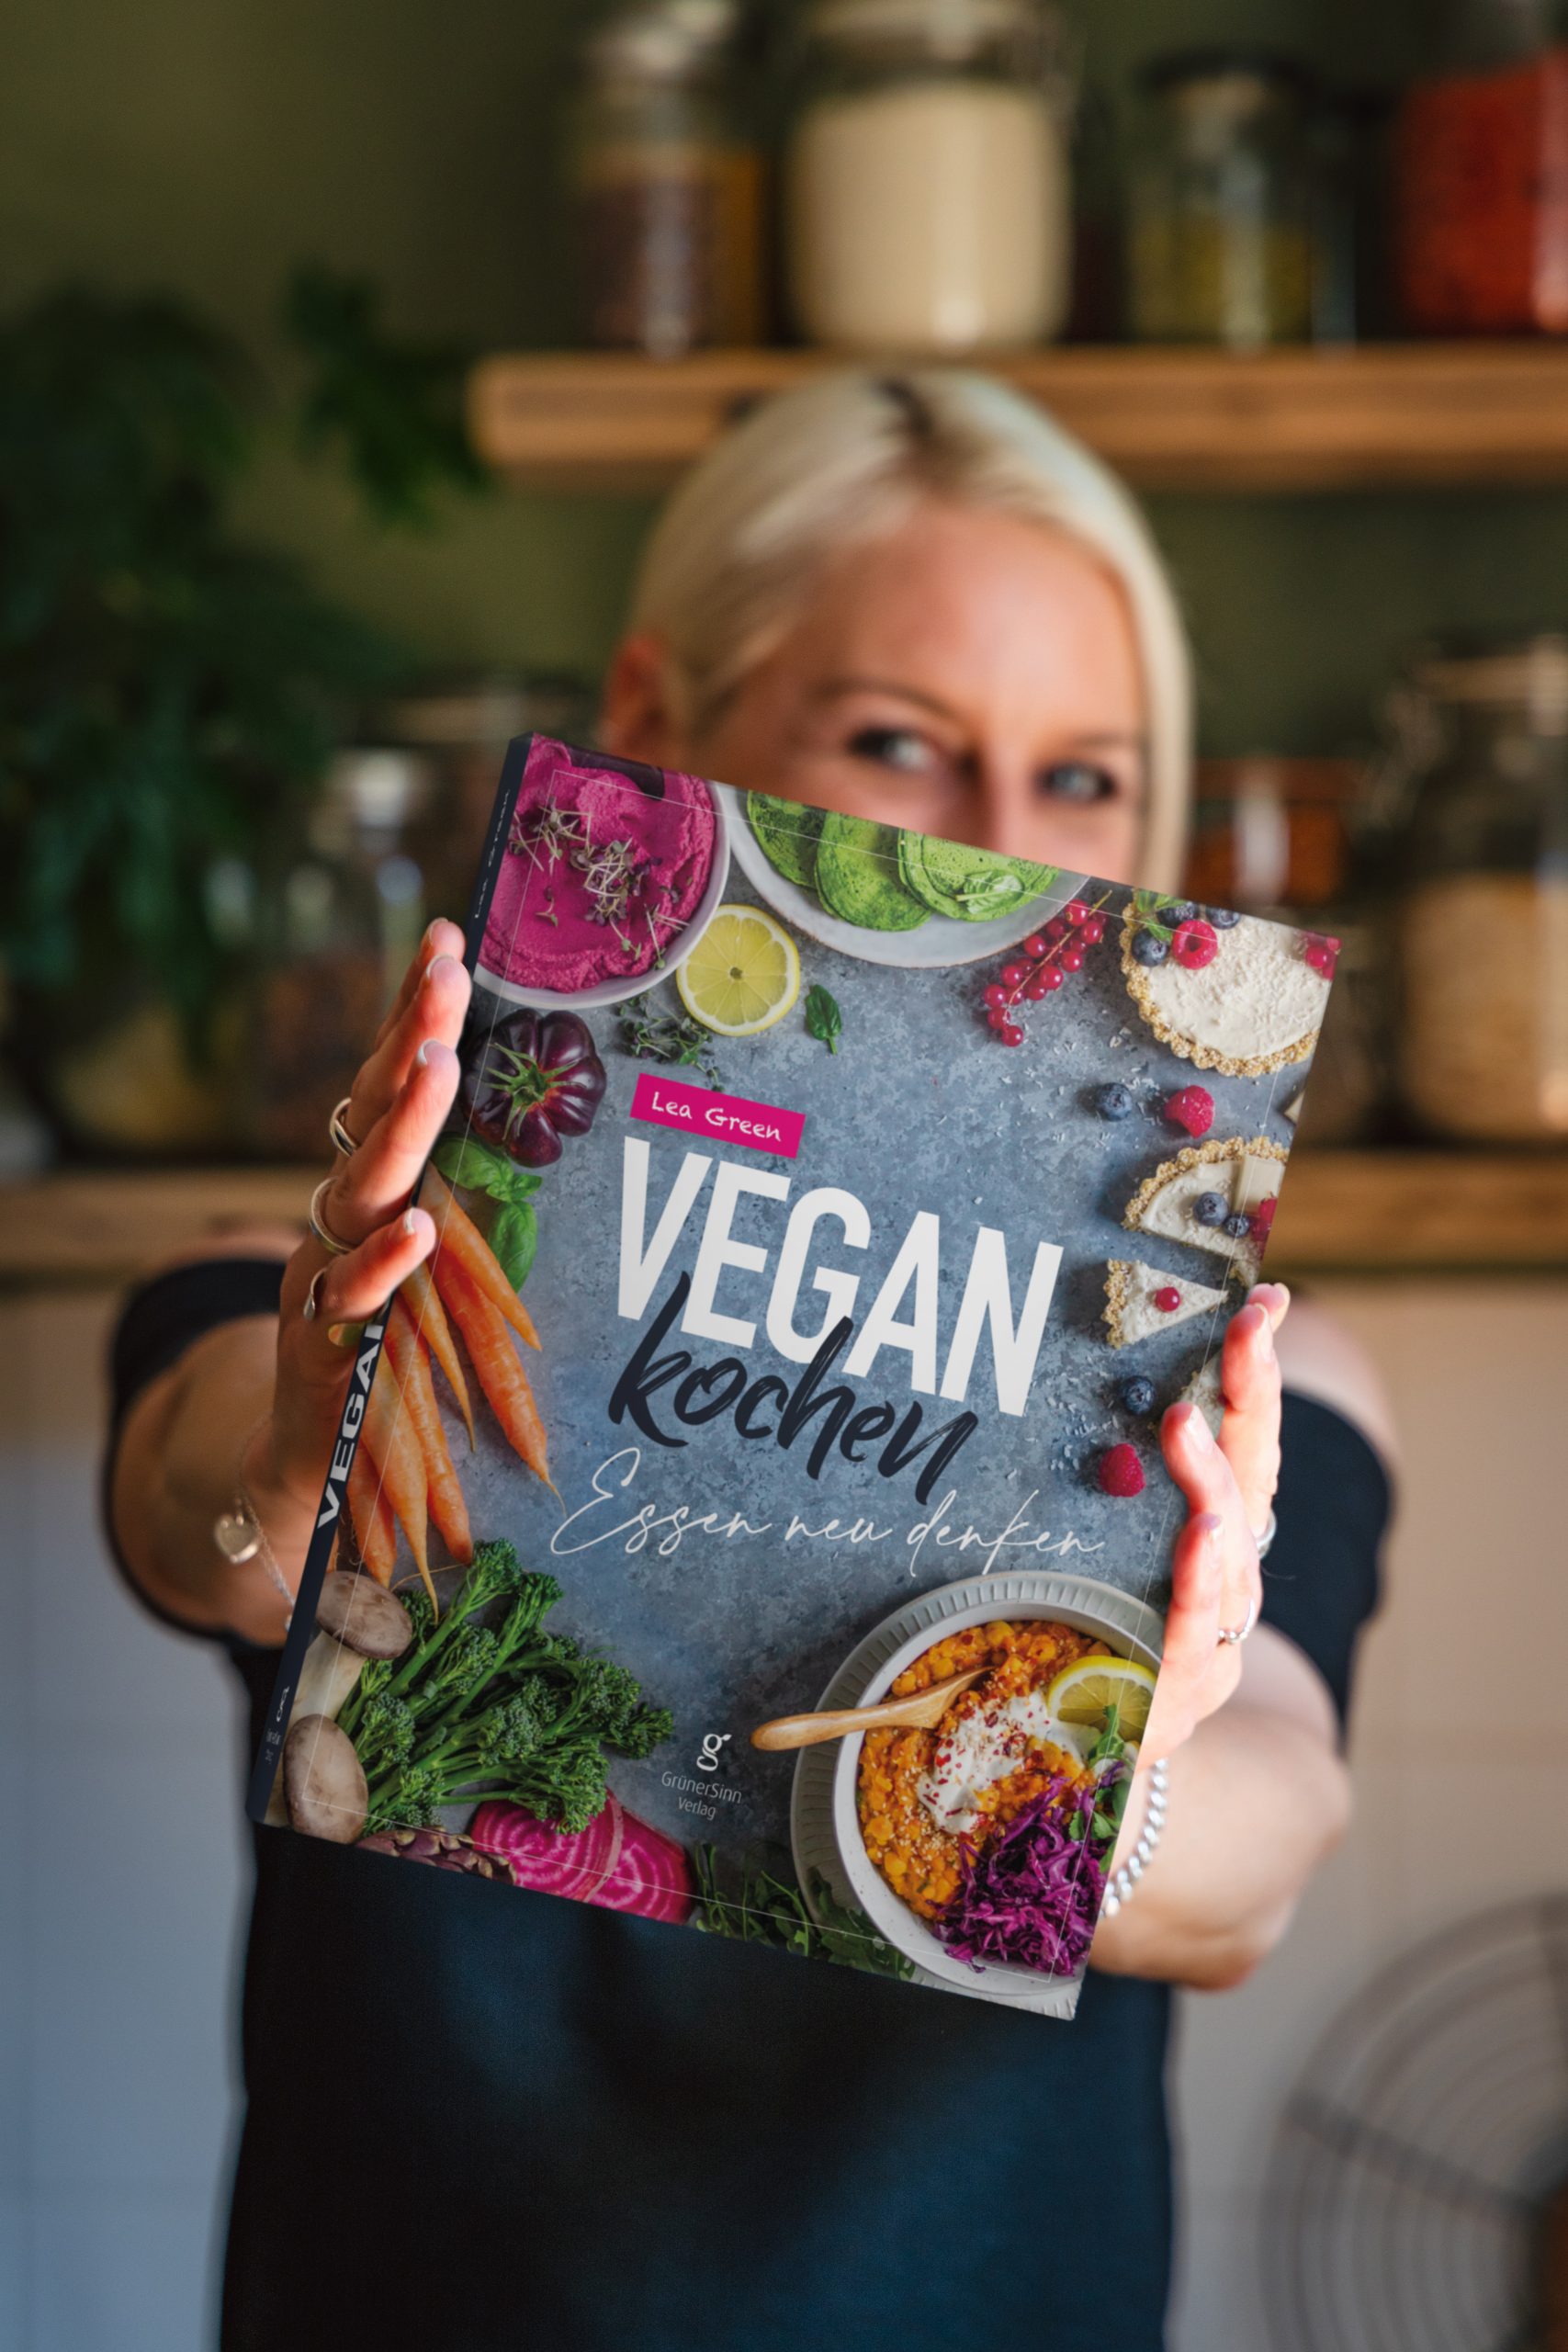 Lea Green, vegane Chefköchin, Kochbuchautorin und Bloggerin. Vegan Kochen - Essen neu denken - Kochbuch von Lea Green